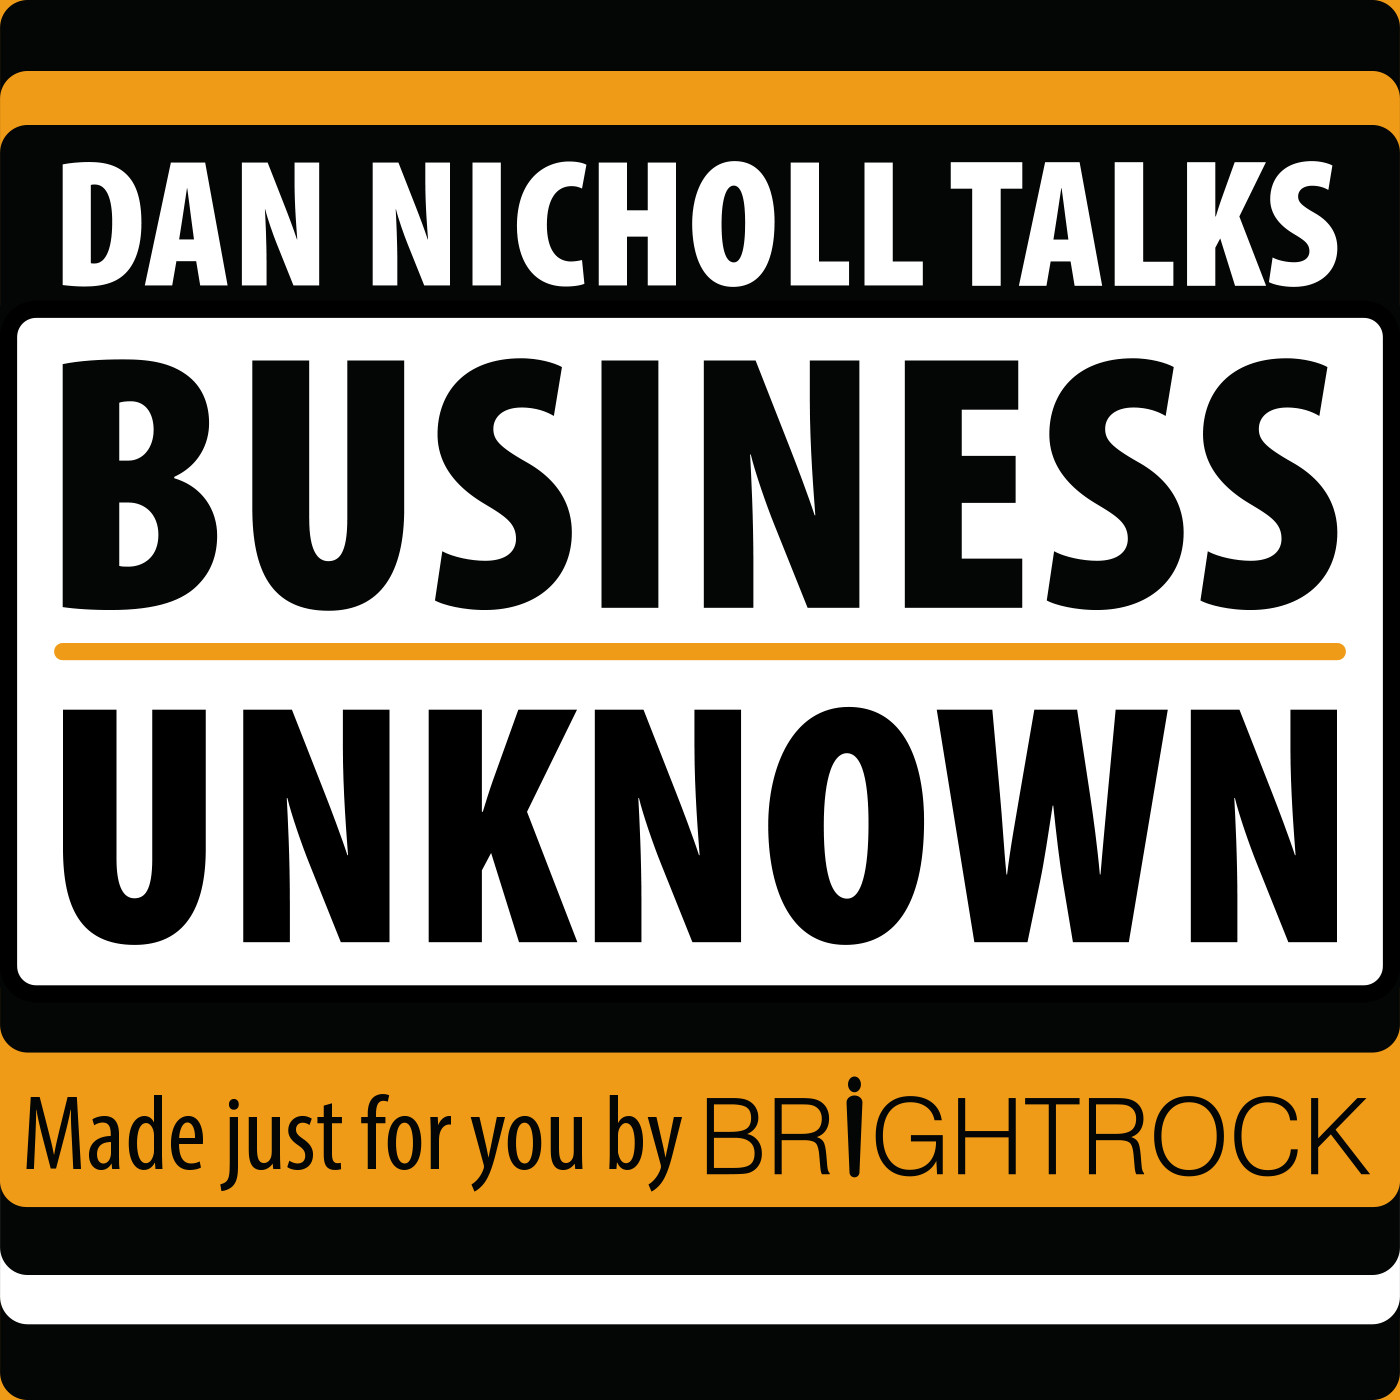 Dan Nicholl Talks Business Unknown with Imtiaz Patel